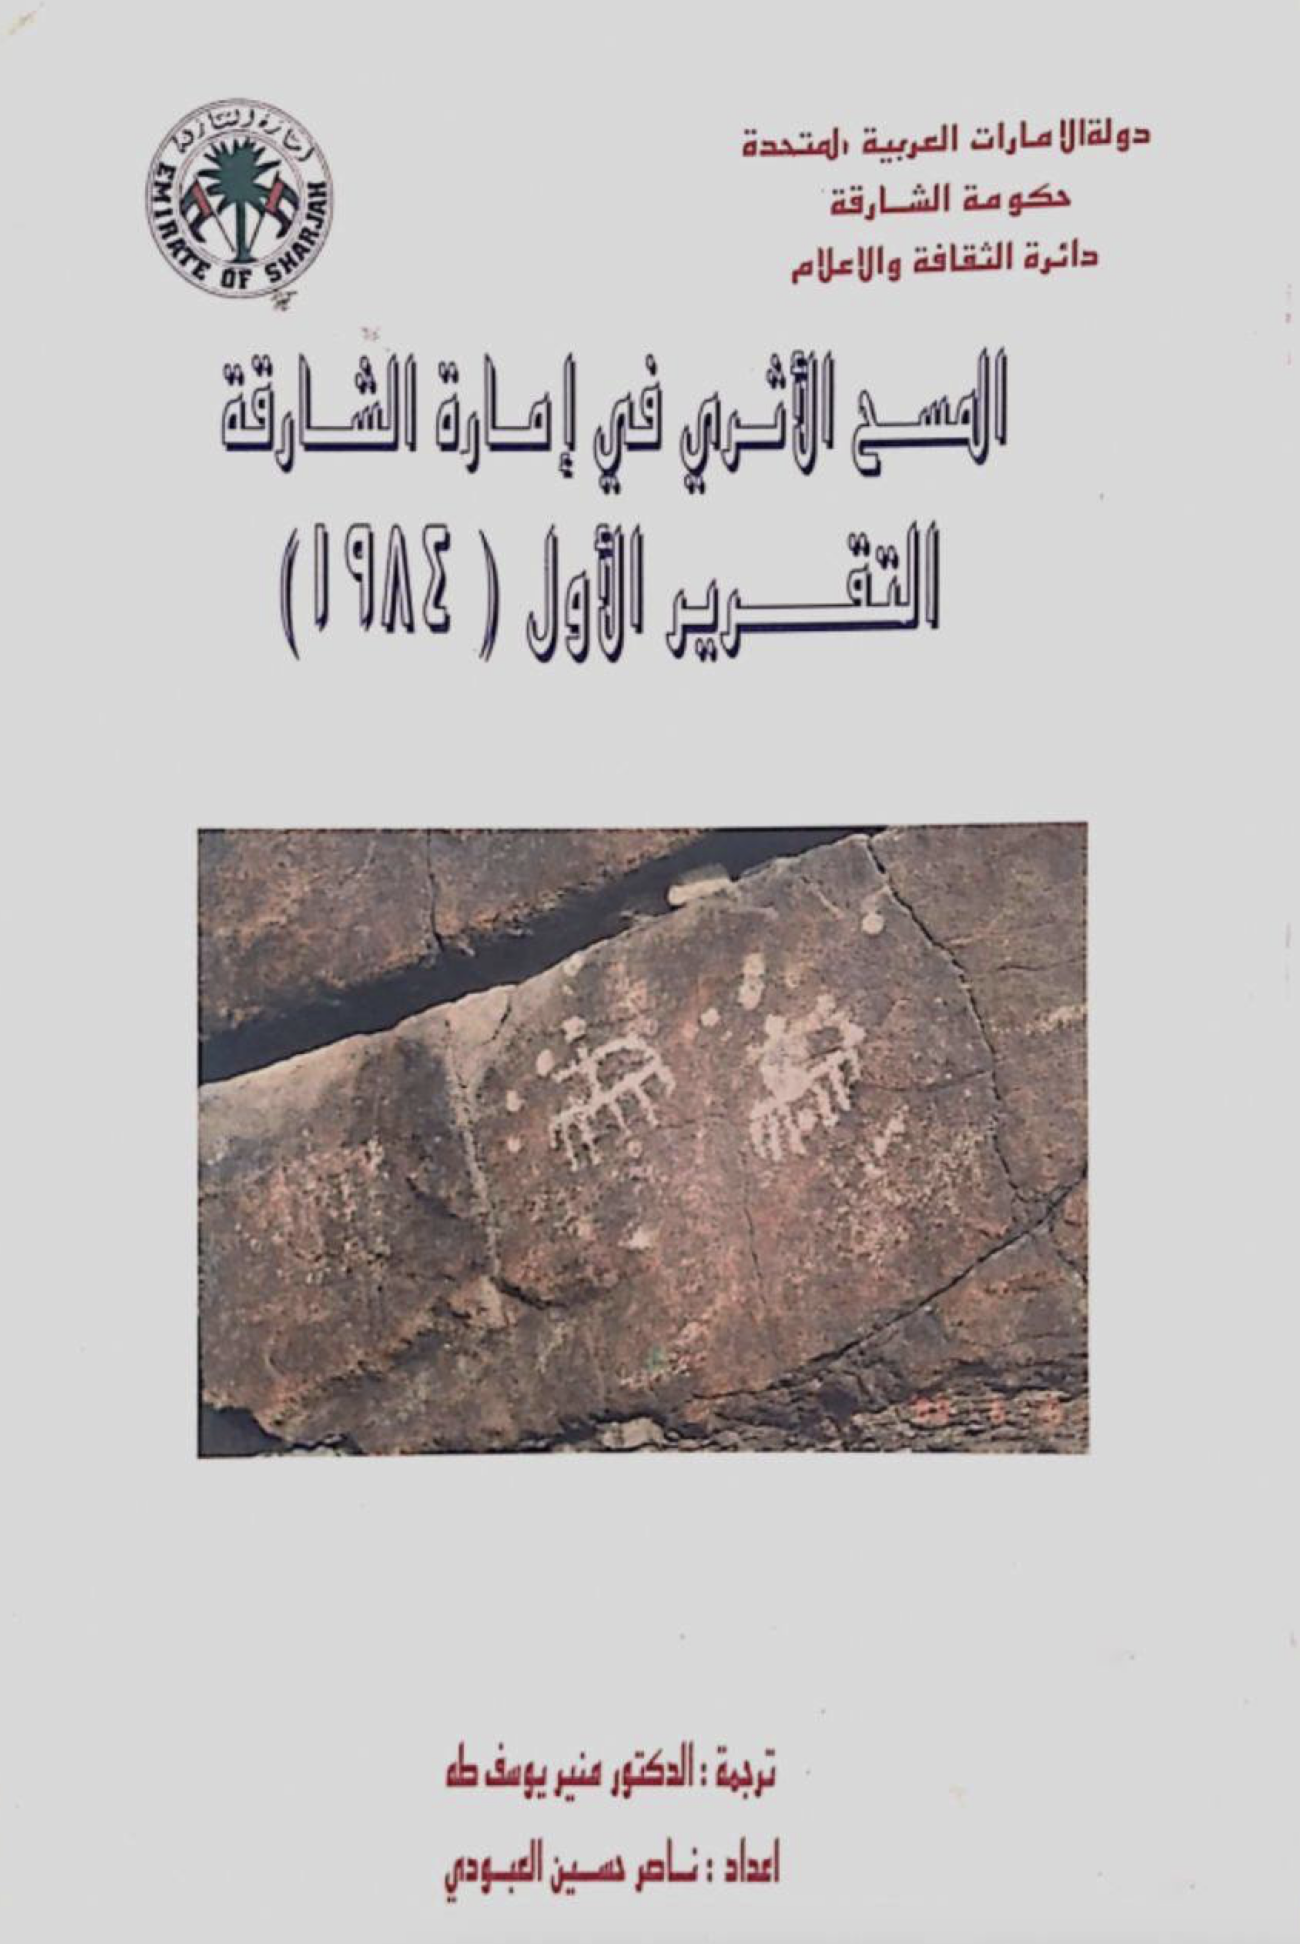 المسح الأثري في إمارة الشارقة - دولة الإمارات العربية المتحدة : التقرير الأول 1984  Survey in Sharjah Emirate U.A.E : first report 1984